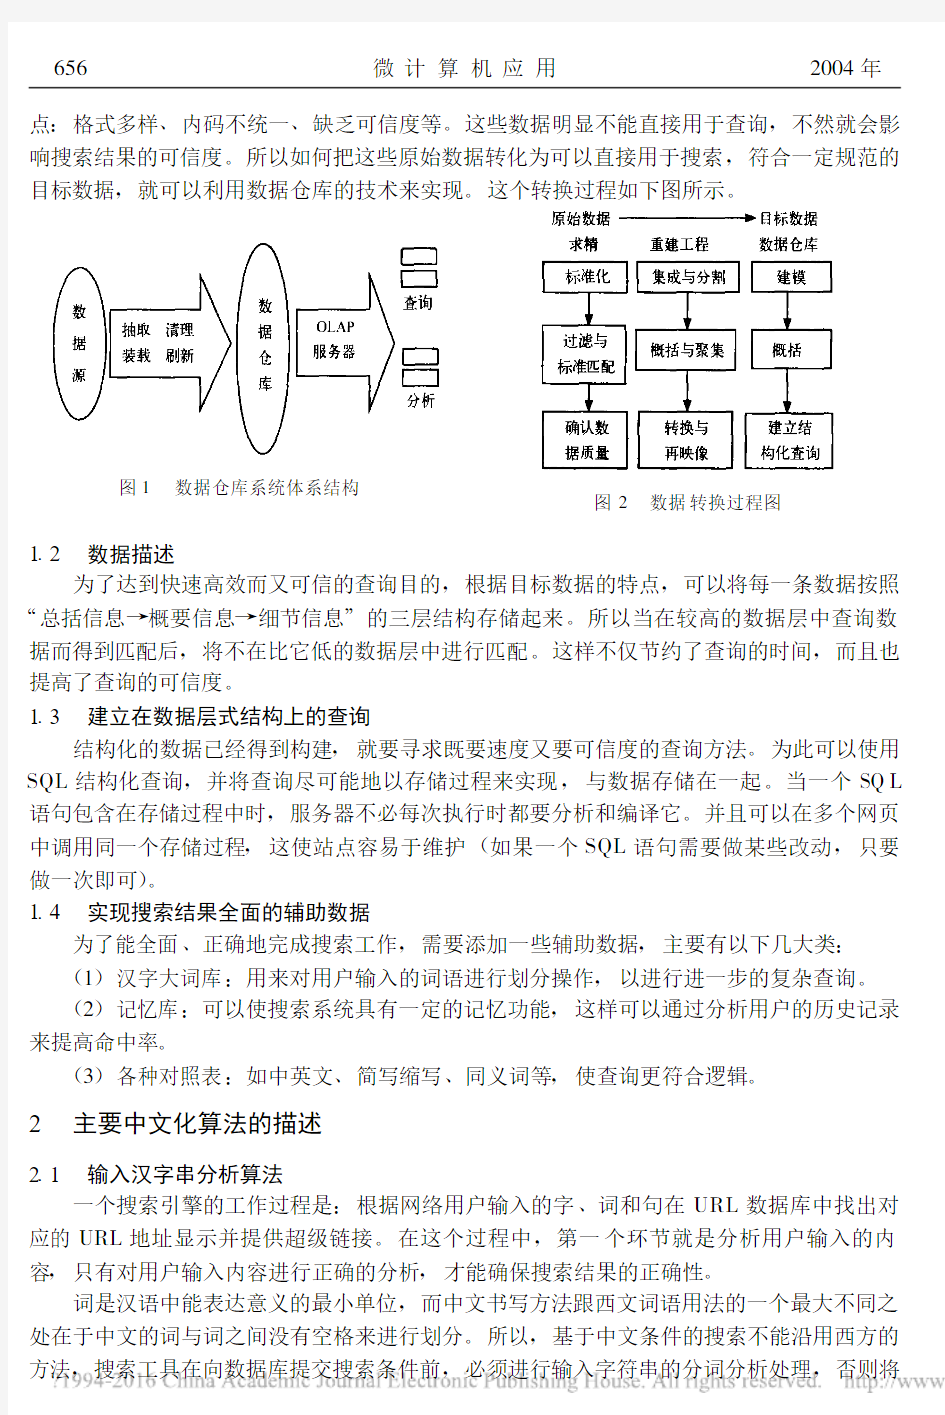 一种在线中文搜索引擎模型的研究_郭施祎